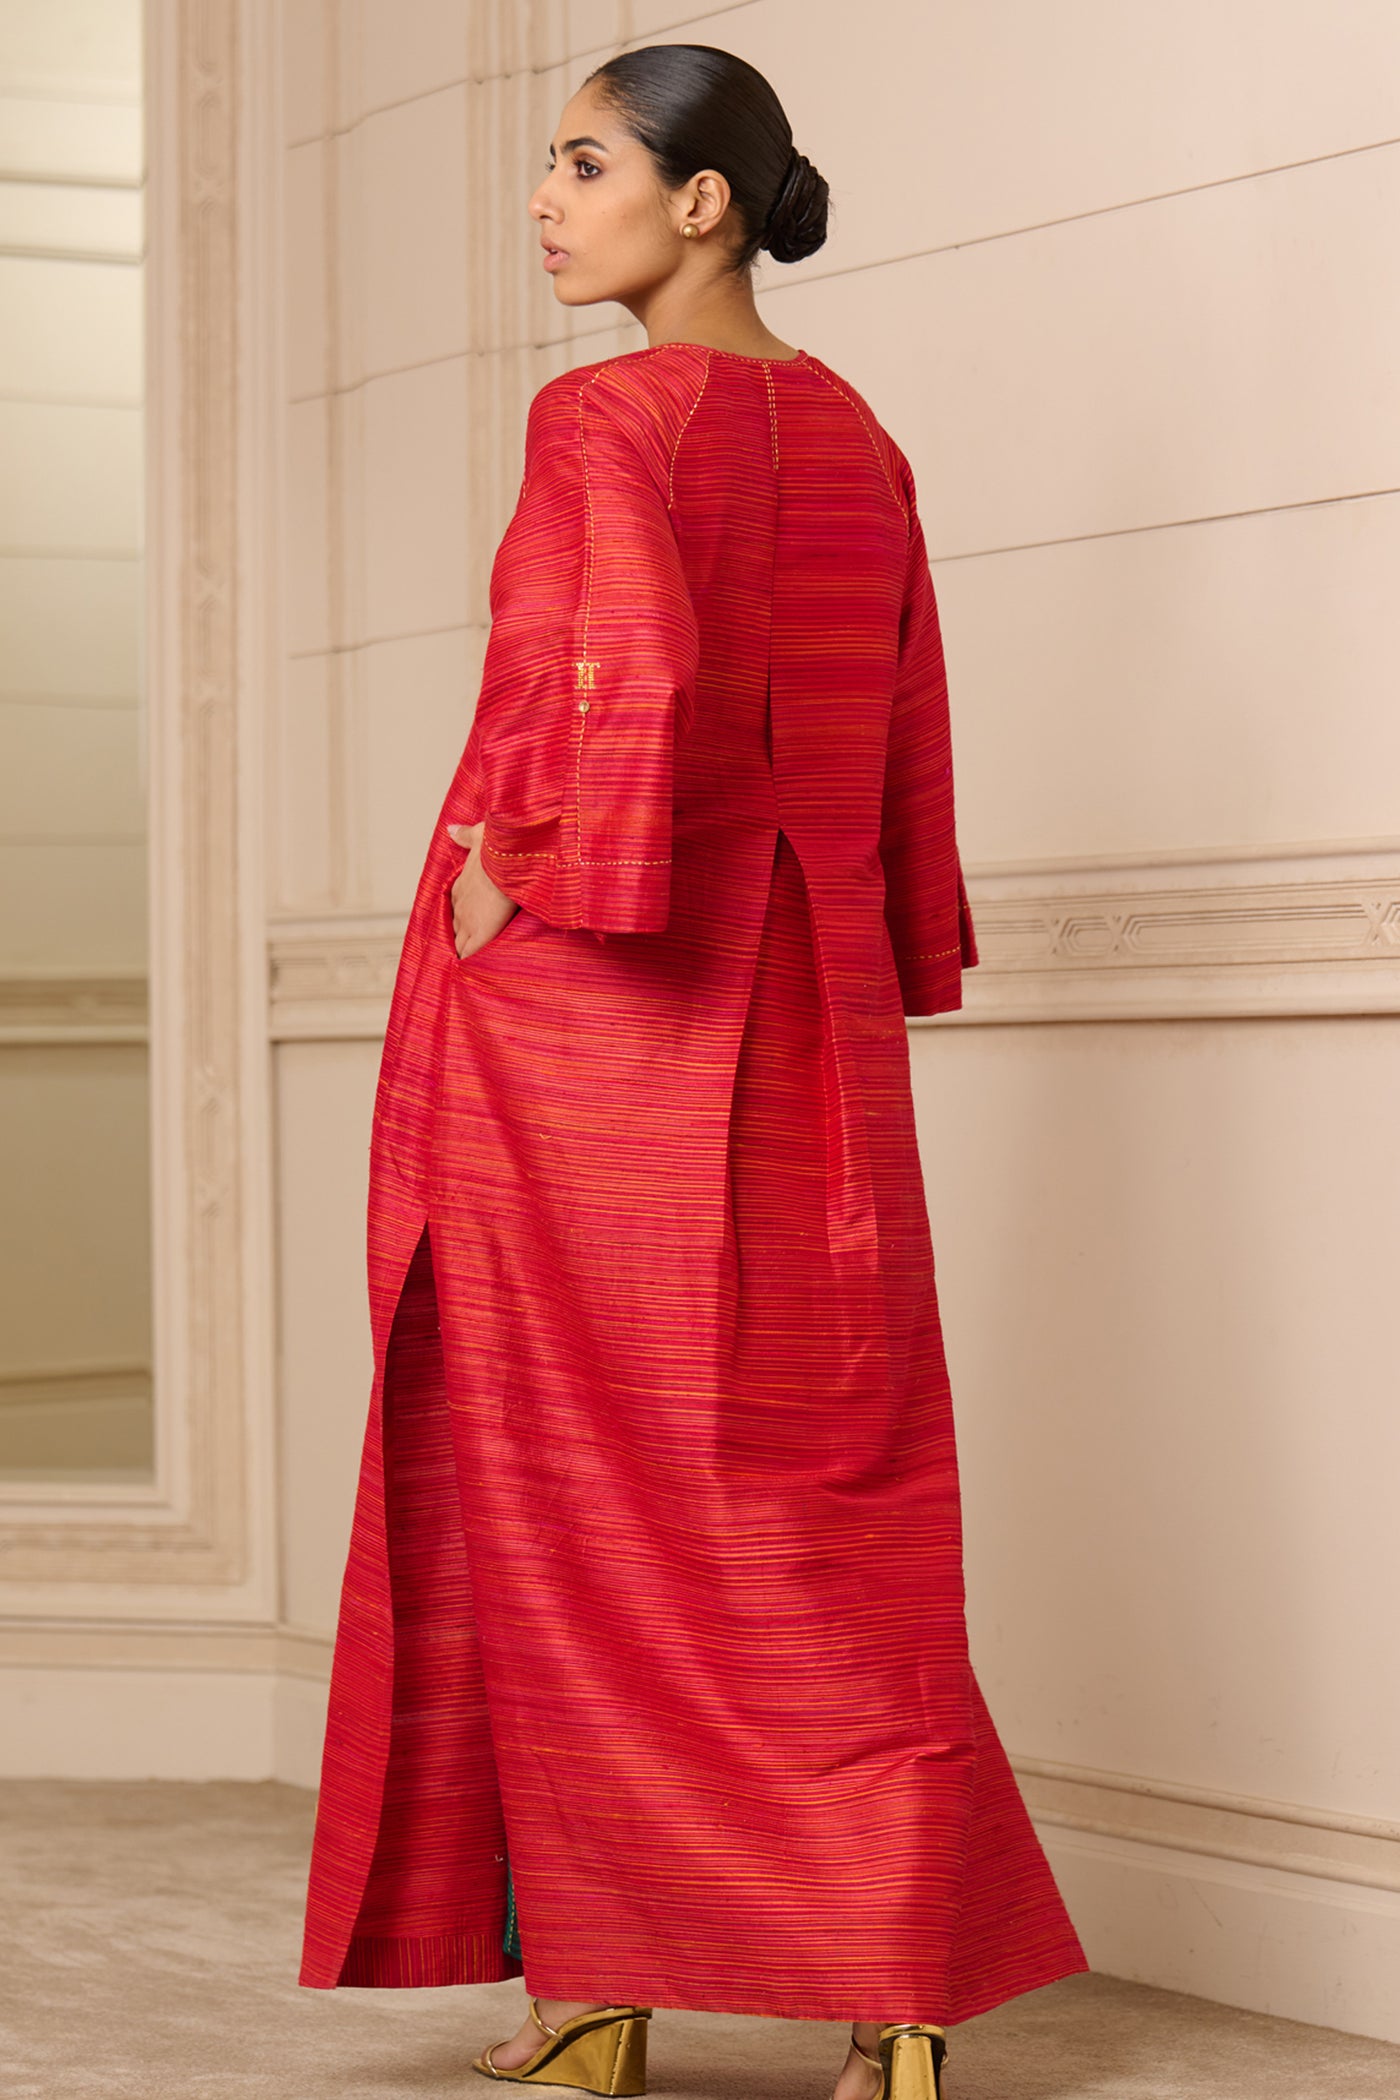 Tarun Tahiliani Tunic Red indian designer wear online shopping melange singapore